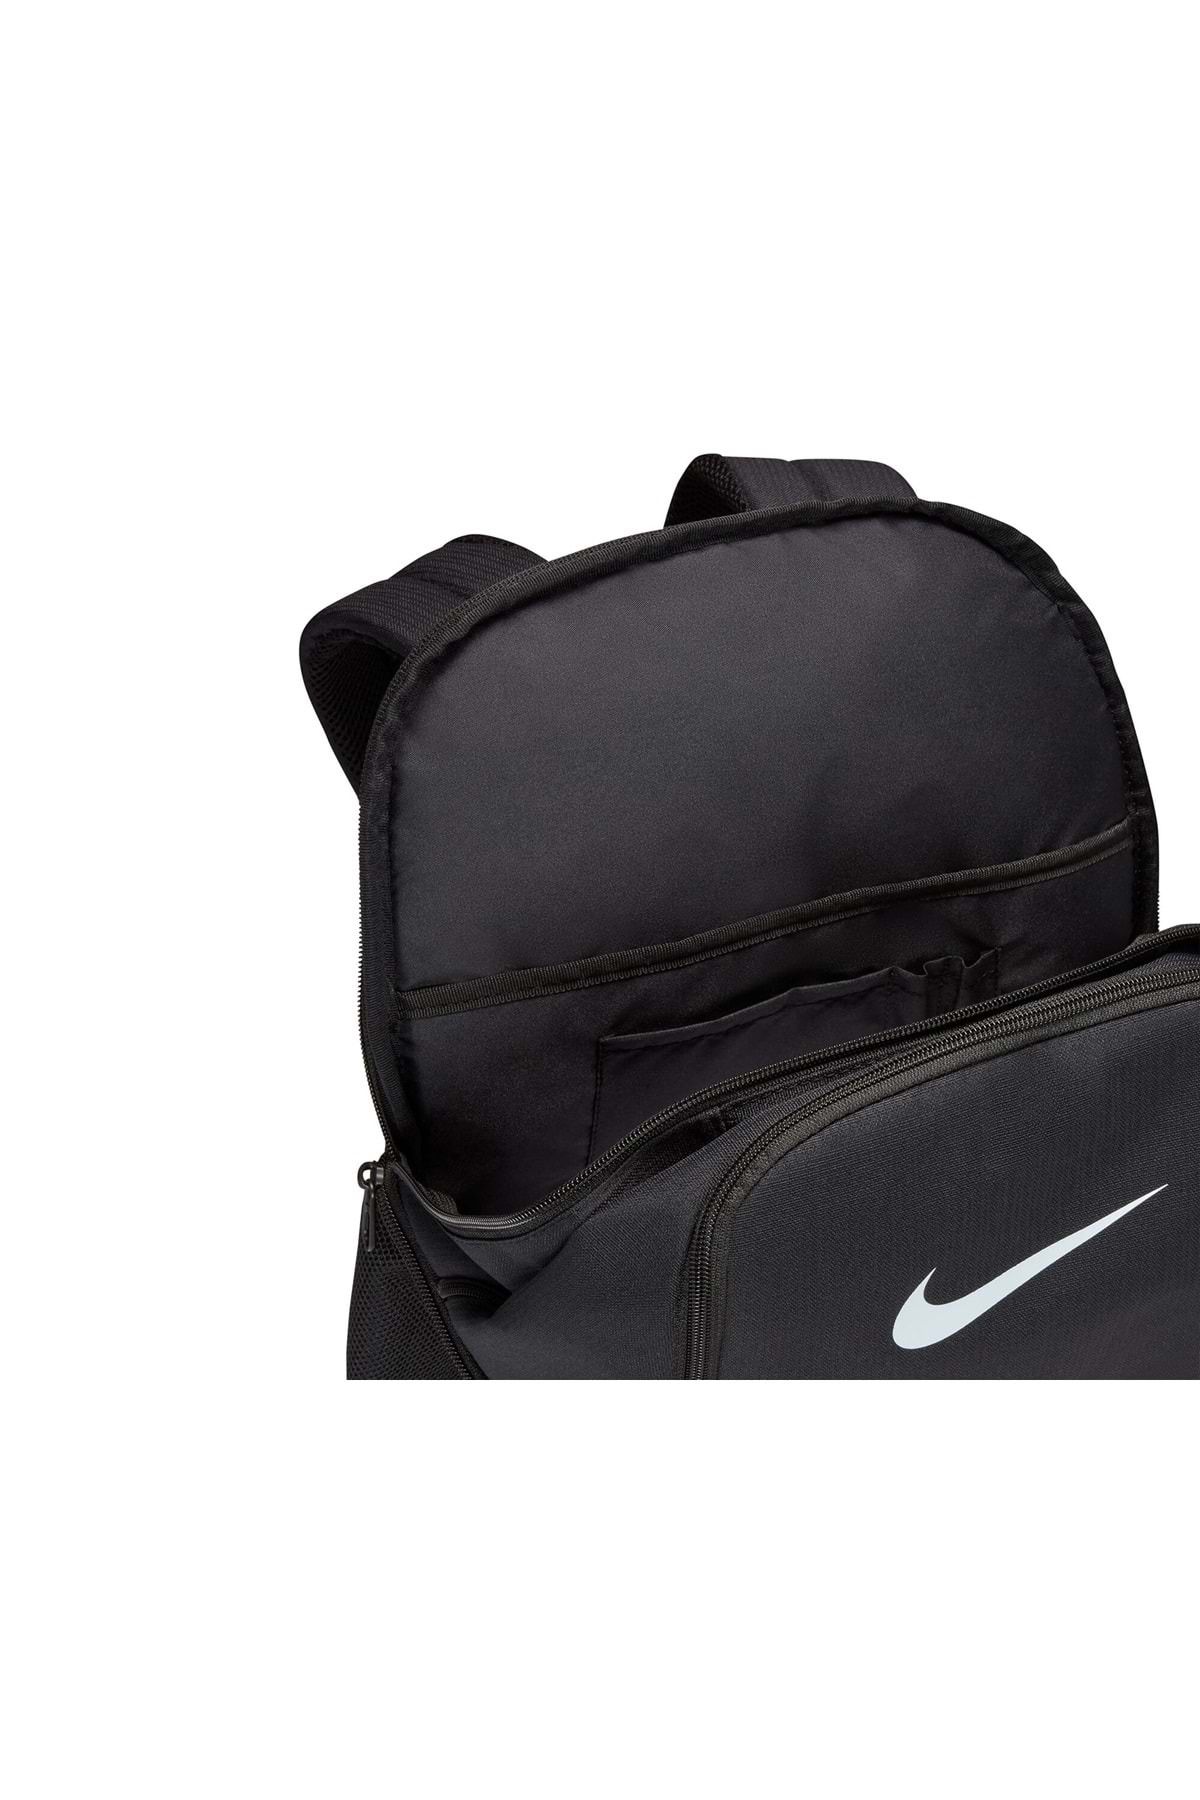 Nike Brasilia Sırt Çantası Fiyatları, Özellikleri ve Yorumları